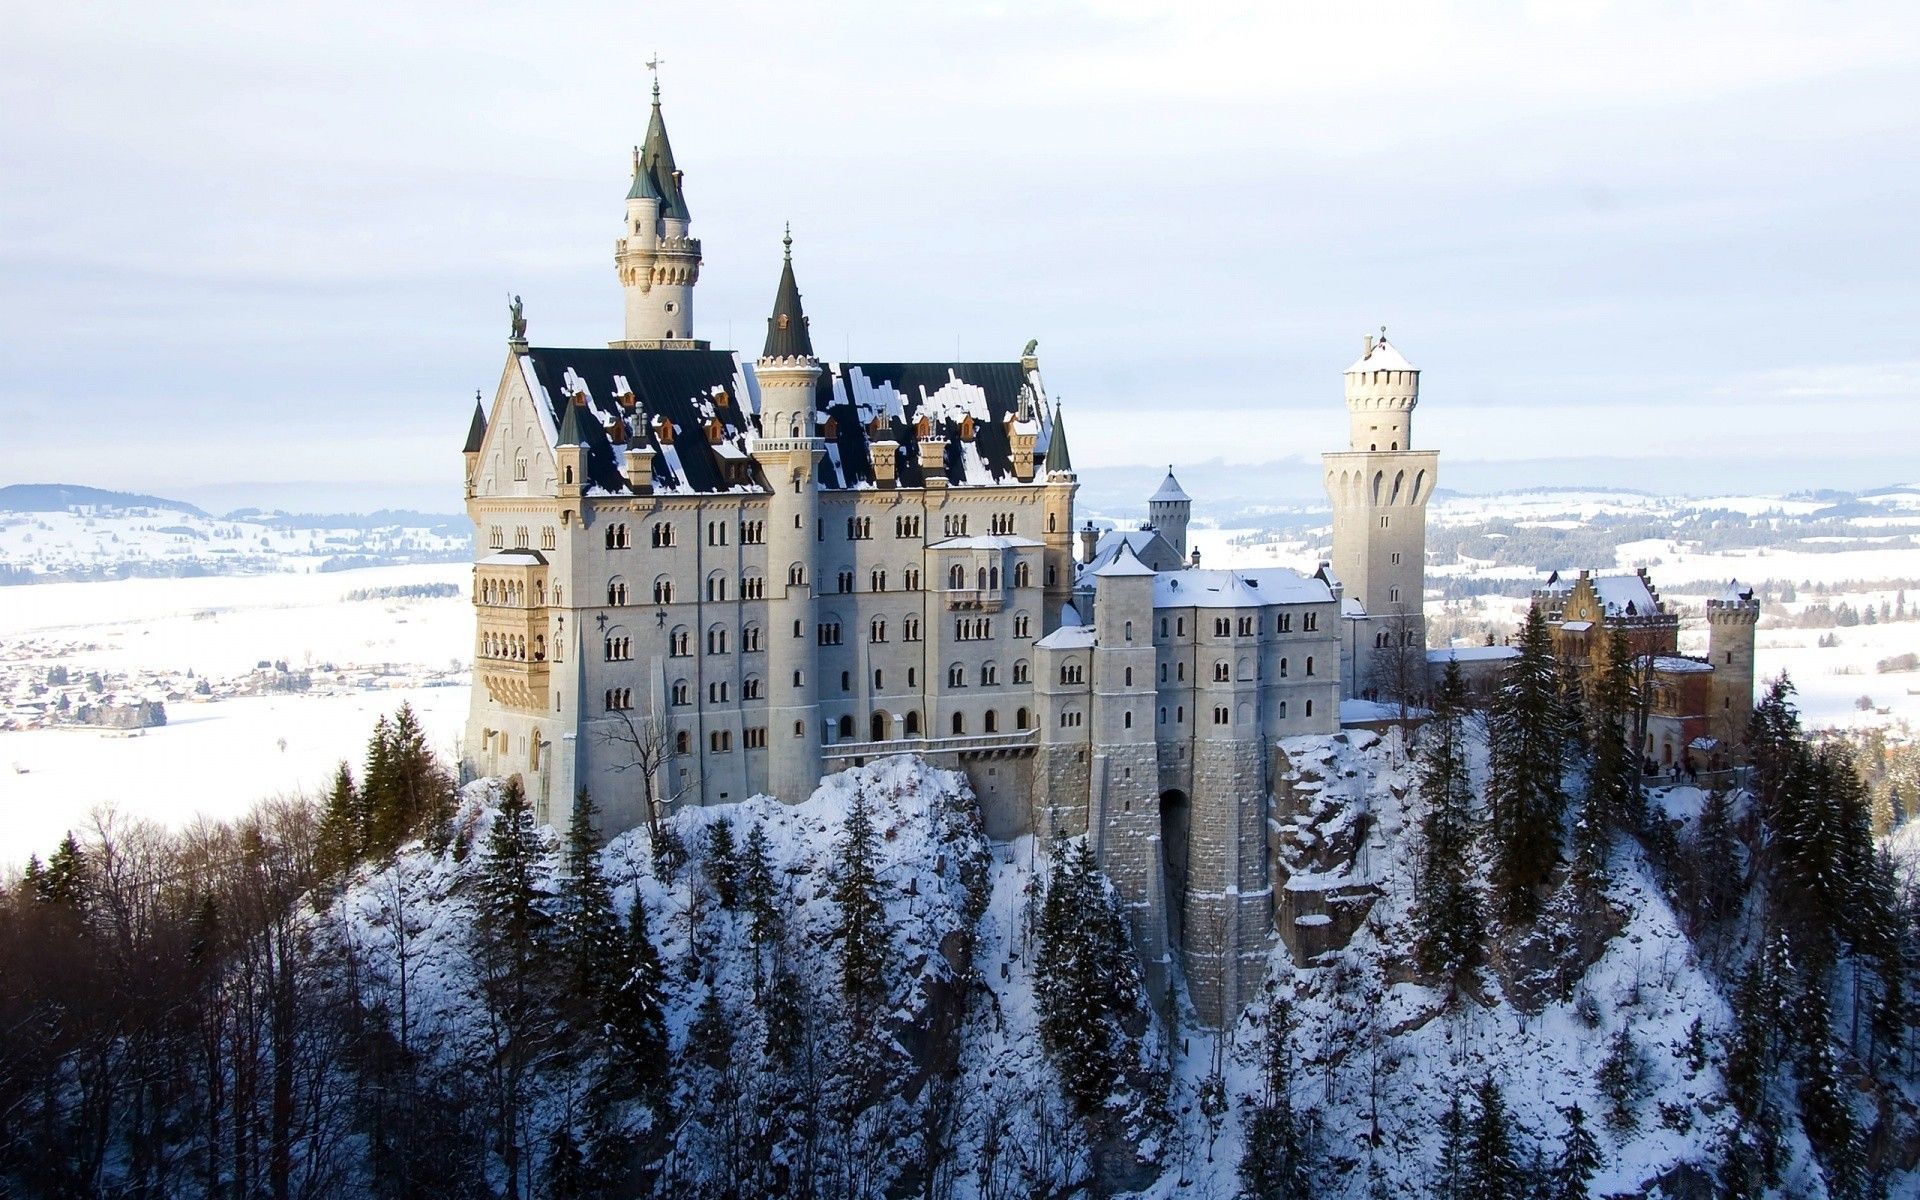 Neuschwanstein Castle in Germany, Winter